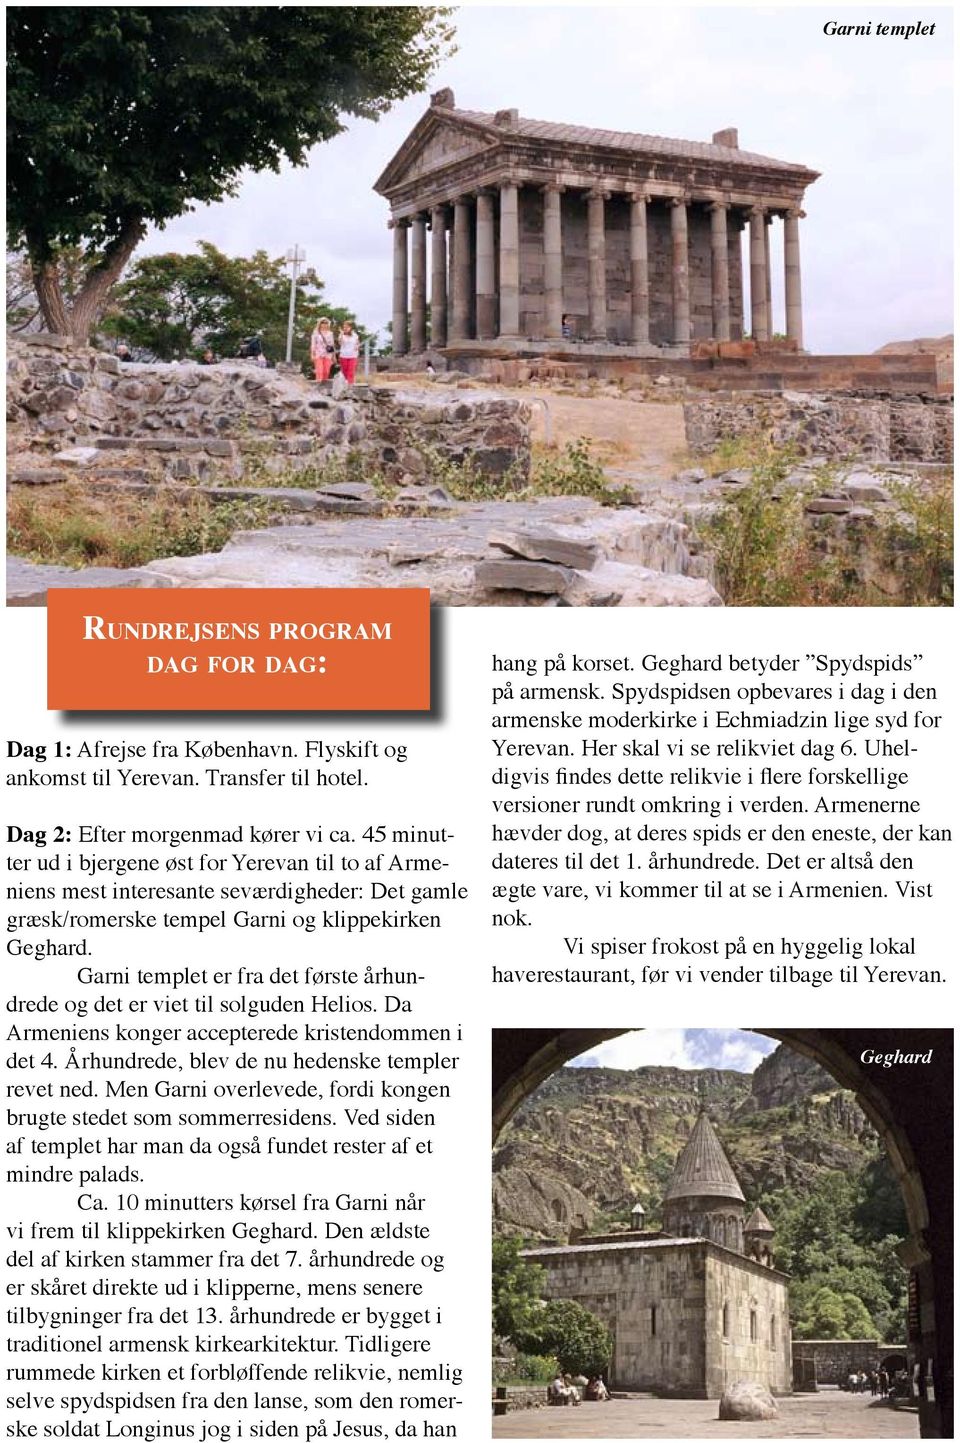 Garni templet er fra det første århundrede og det er viet til solguden Helios. Da Armeniens konger accepterede kristendommen i det 4. Århundrede, blev de nu hedenske templer revet ned.